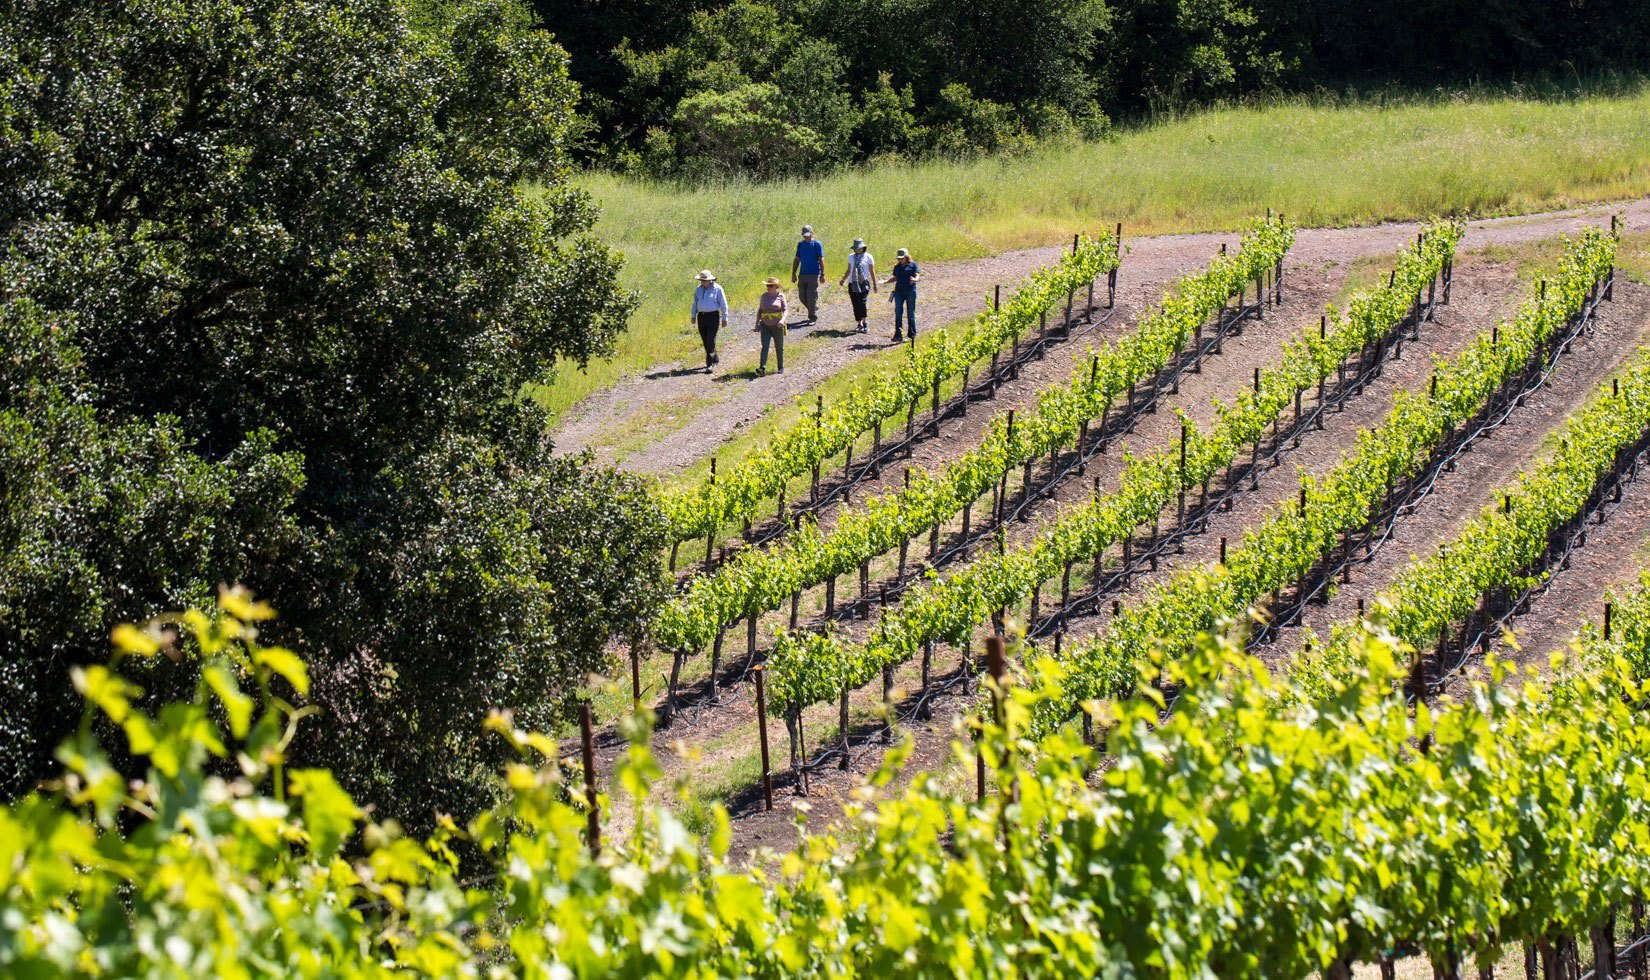 Guests walking through the Jordan Estate on the spring vineyard hike